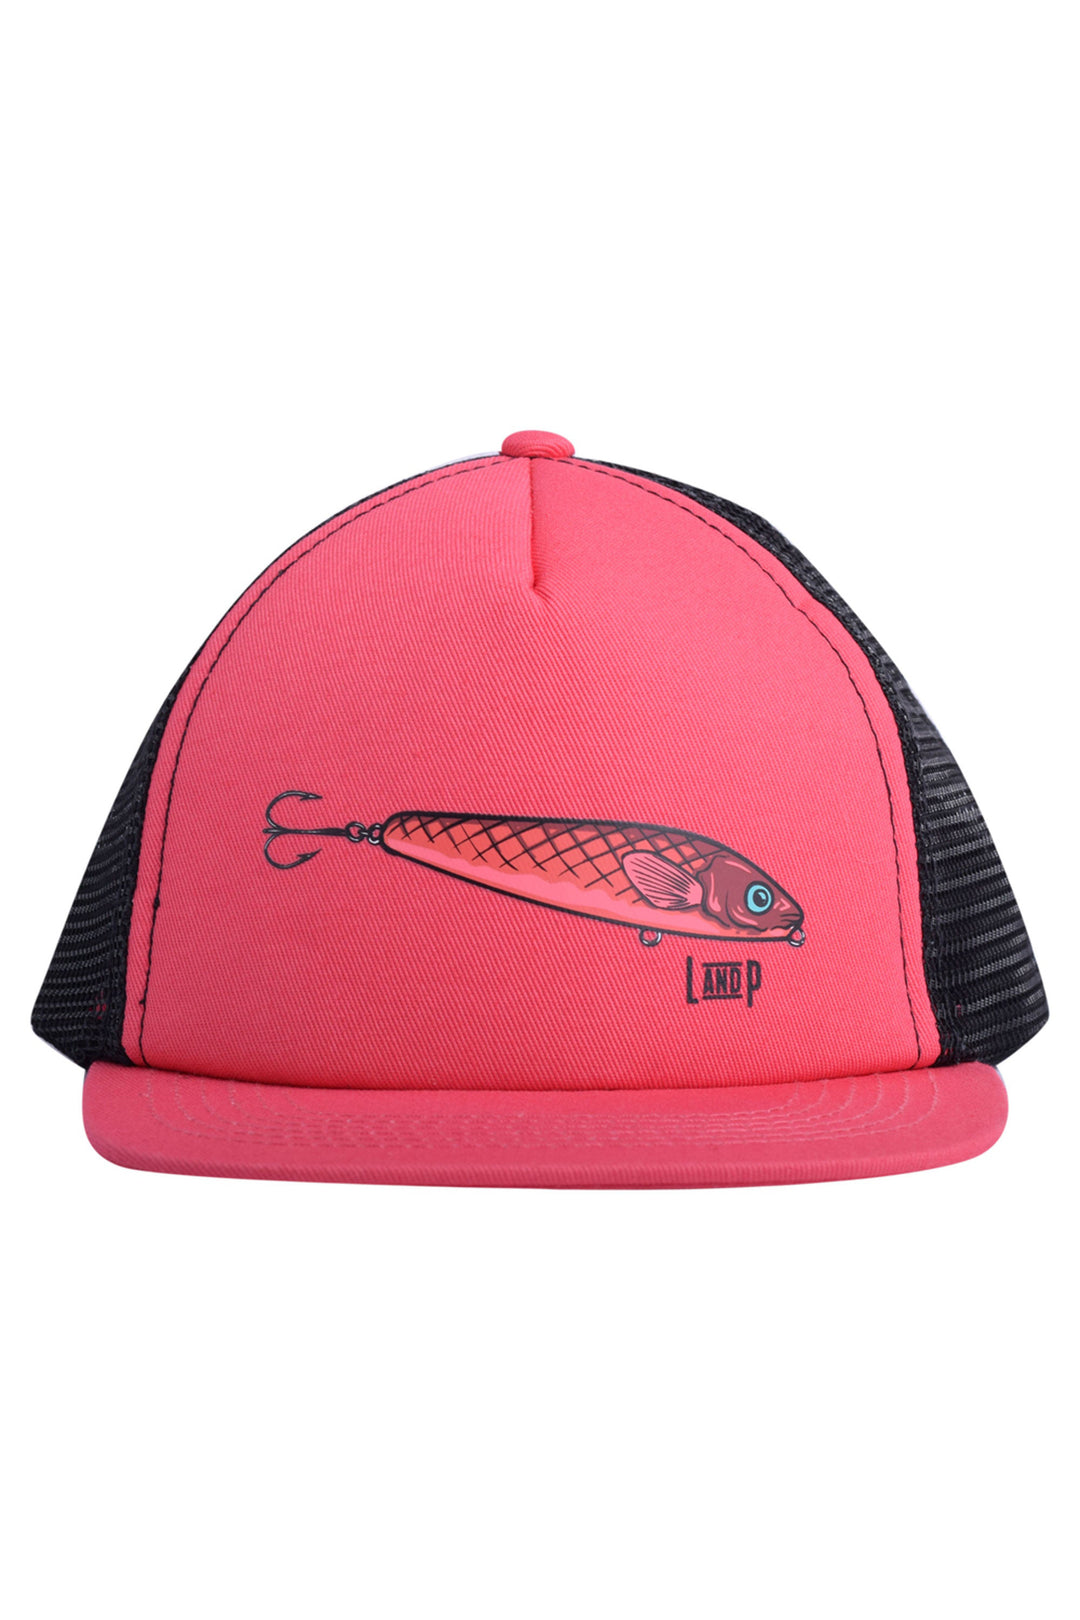 Fish series mesh cap - Fit Simplistic [Baby]